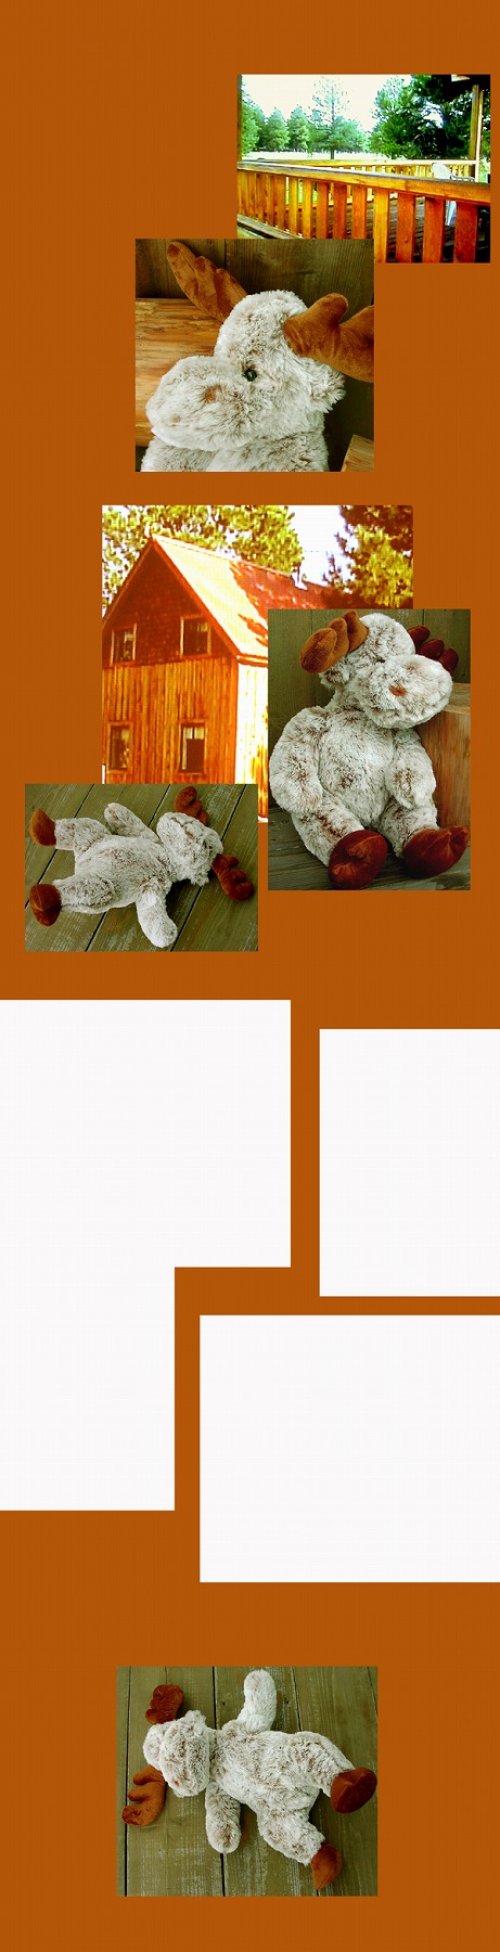 画像クリックで大きく確認できます　Click↓1: ログキャビン ラージ ホワイトムース/ Moose Doll(Large)